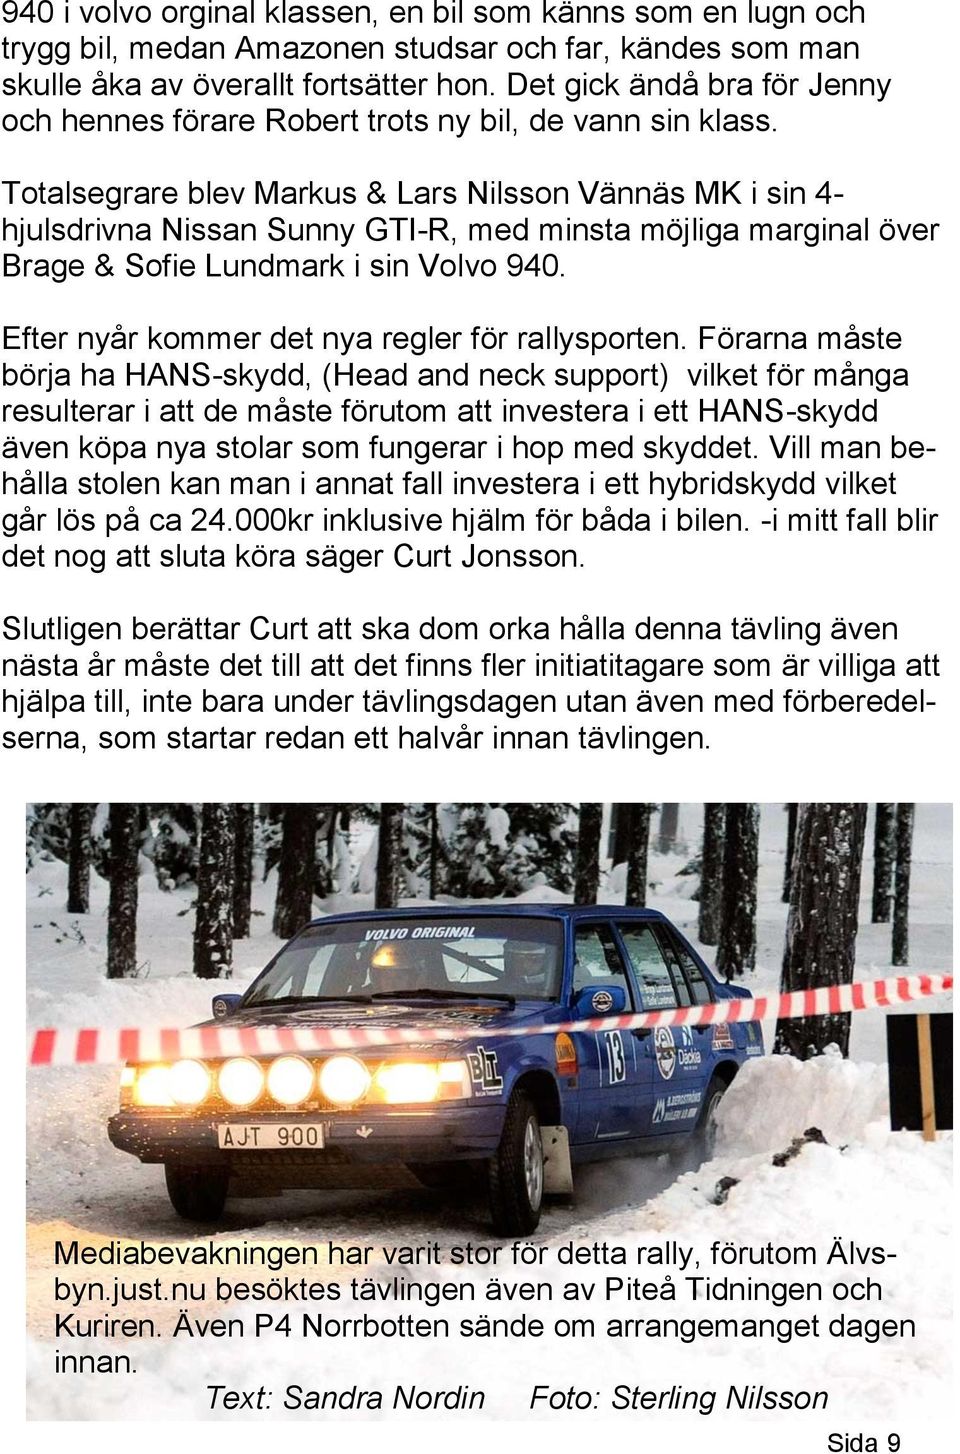 Totalsegrare blev Markus & Lars Nilsson Vännäs MK i sin 4- hjulsdrivna Nissan Sunny GTI-R, med minsta möjliga marginal över Brage & Sofie Lundmark i sin Volvo 940.